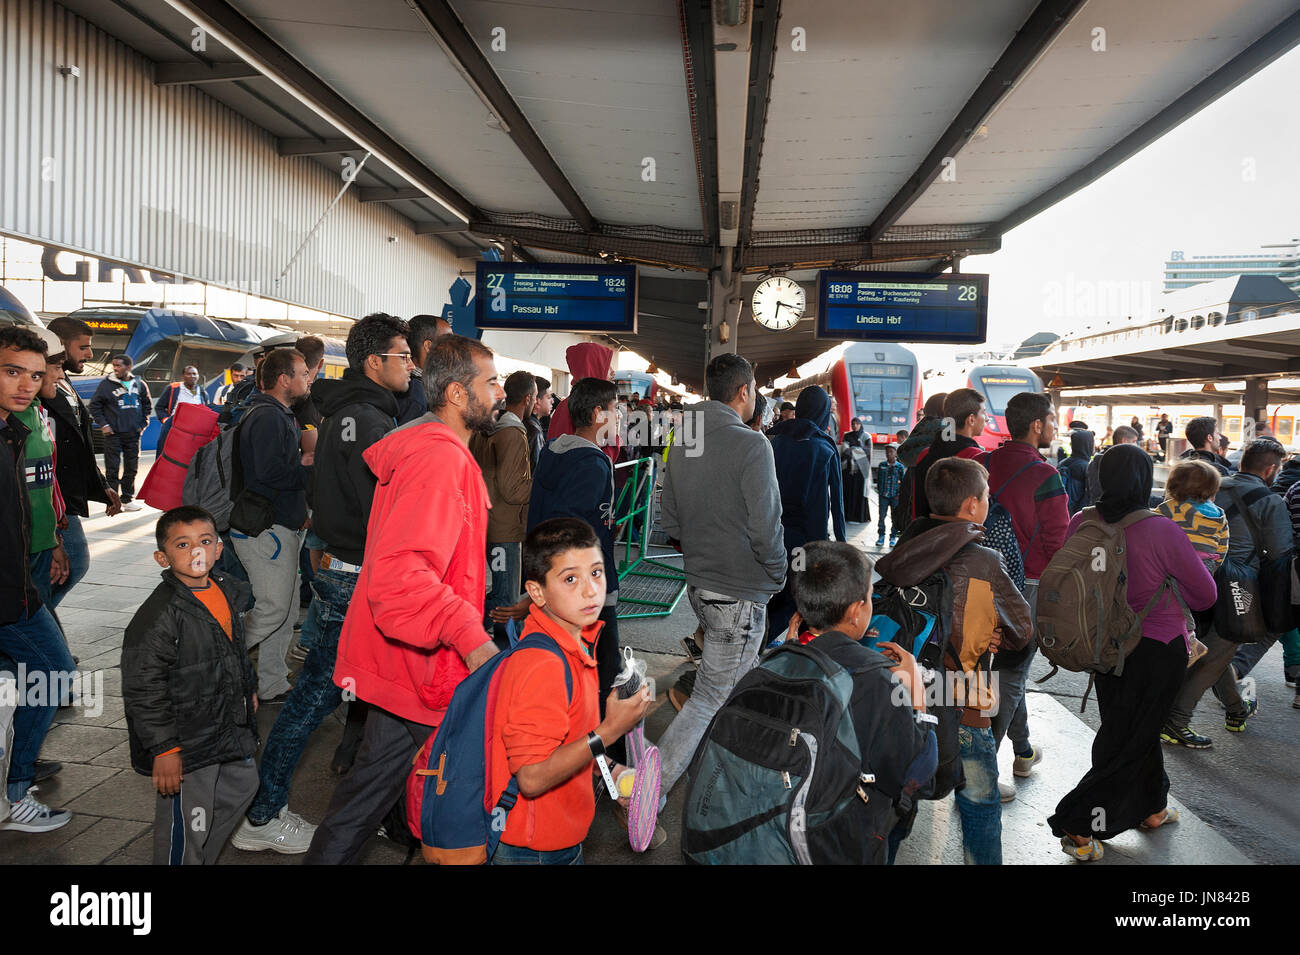 Munich, Allemagne - Septembre 10th, 2015 : les réfugiés en provenance de Syrie, l'Afghanistan et des Balkans qui arrivent à Munich pour demander l'asile en Allemagne. Banque D'Images